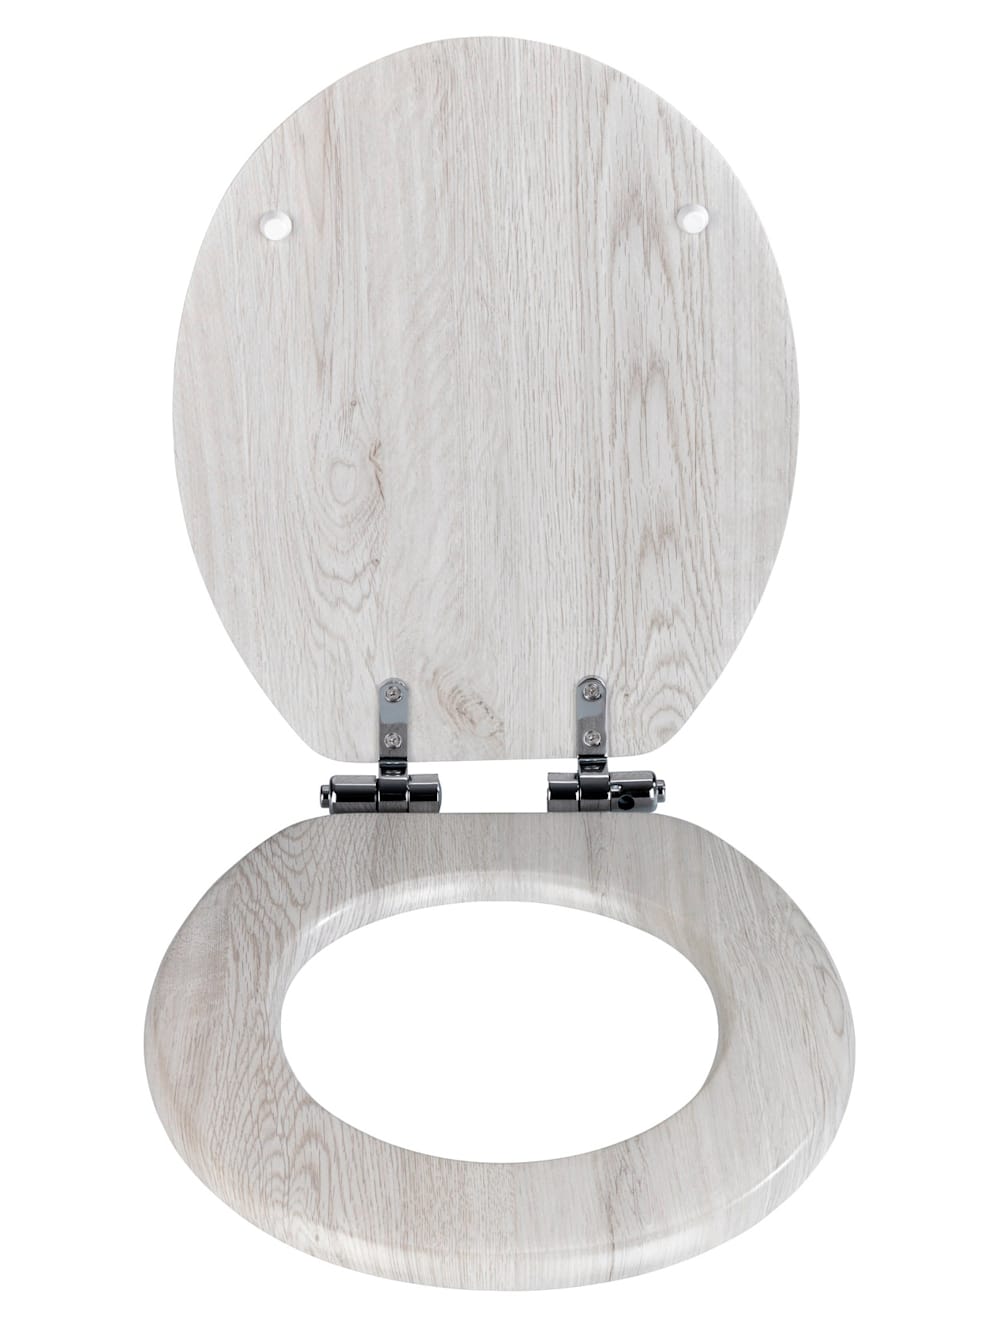 Afdaling Herhaald Verkeerd Wenko WC-bril in houtlook | Wellsana